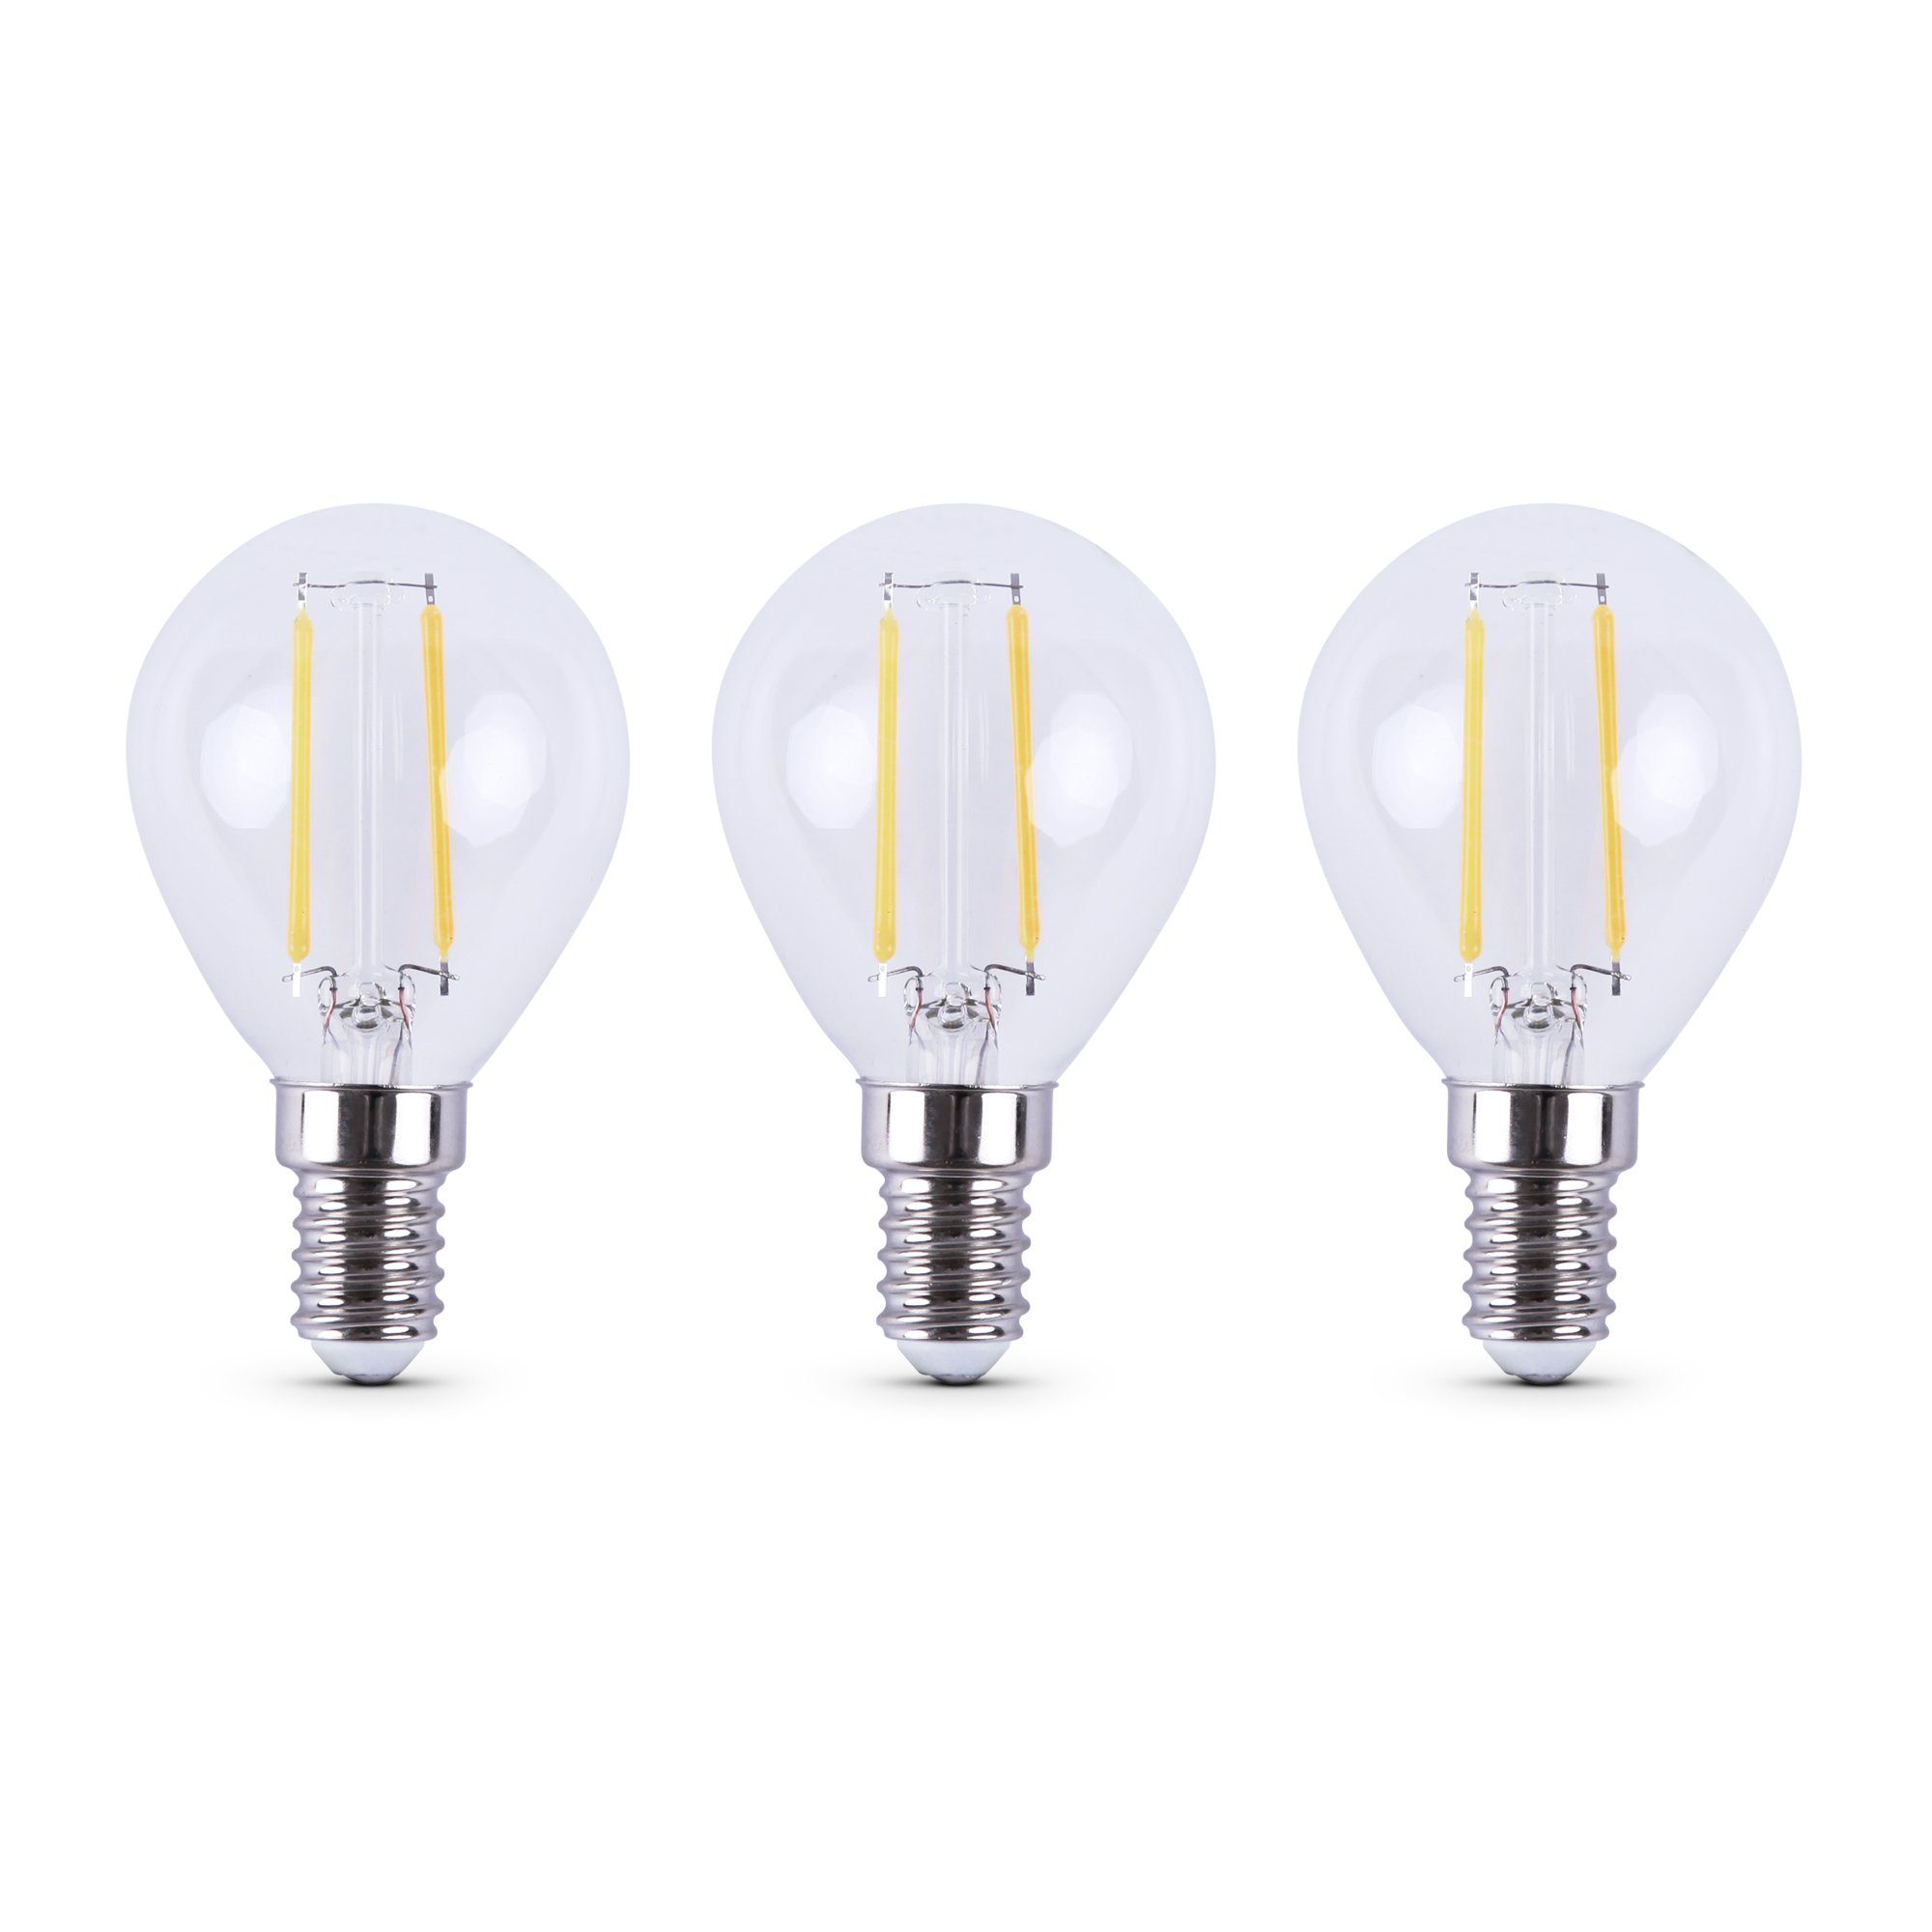 Bestlivings LED-Leuchtmittel 77202 Glühbirne, E14, 2700K Warmweiß, Retrolicht Warmweiß LED-Birne Glühlampe 3 St